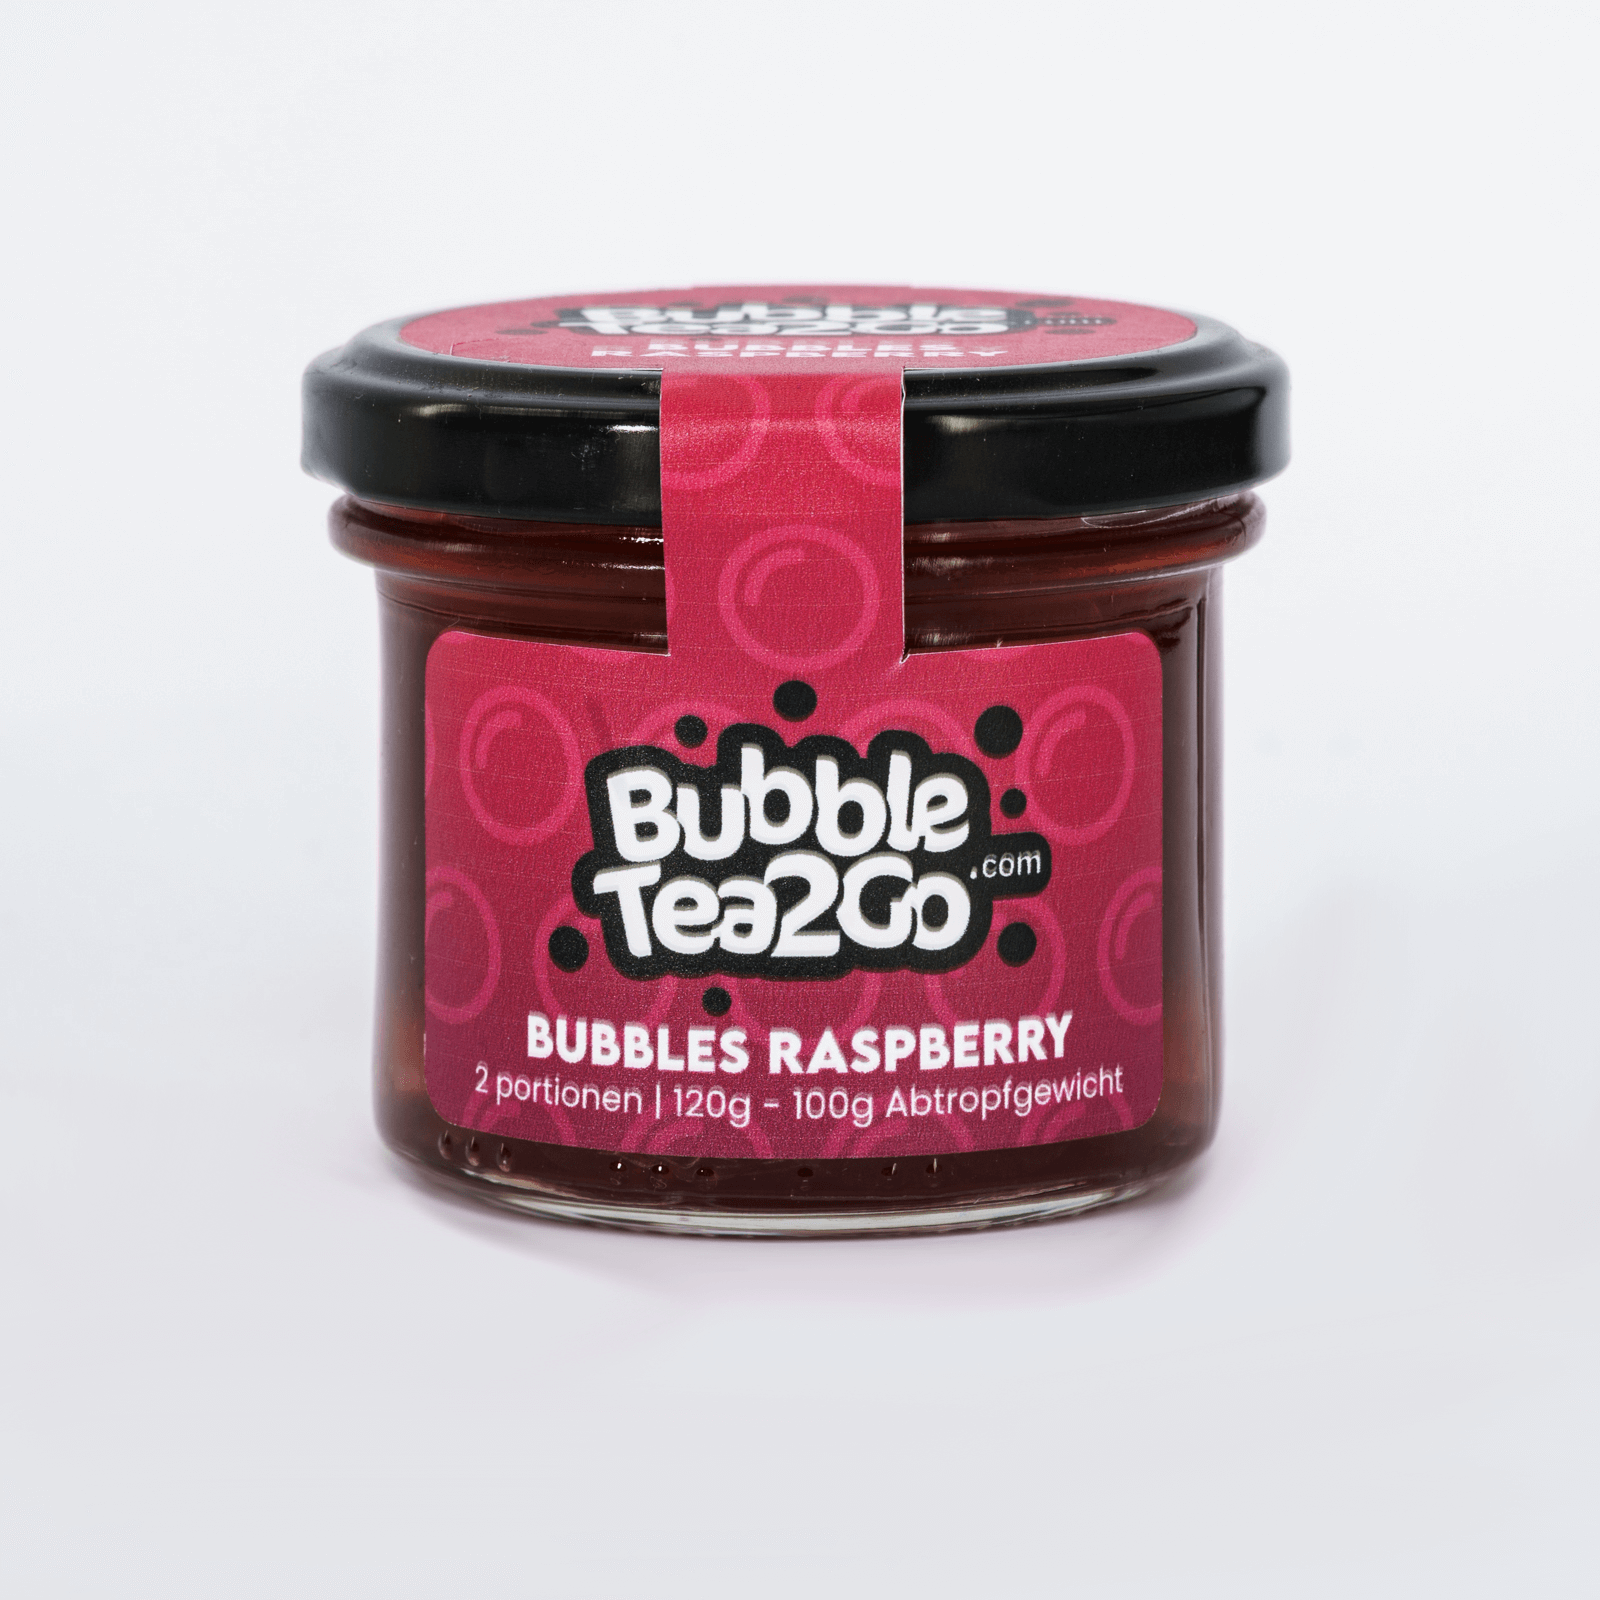 Bubbles - Raspberry 2 Portionen